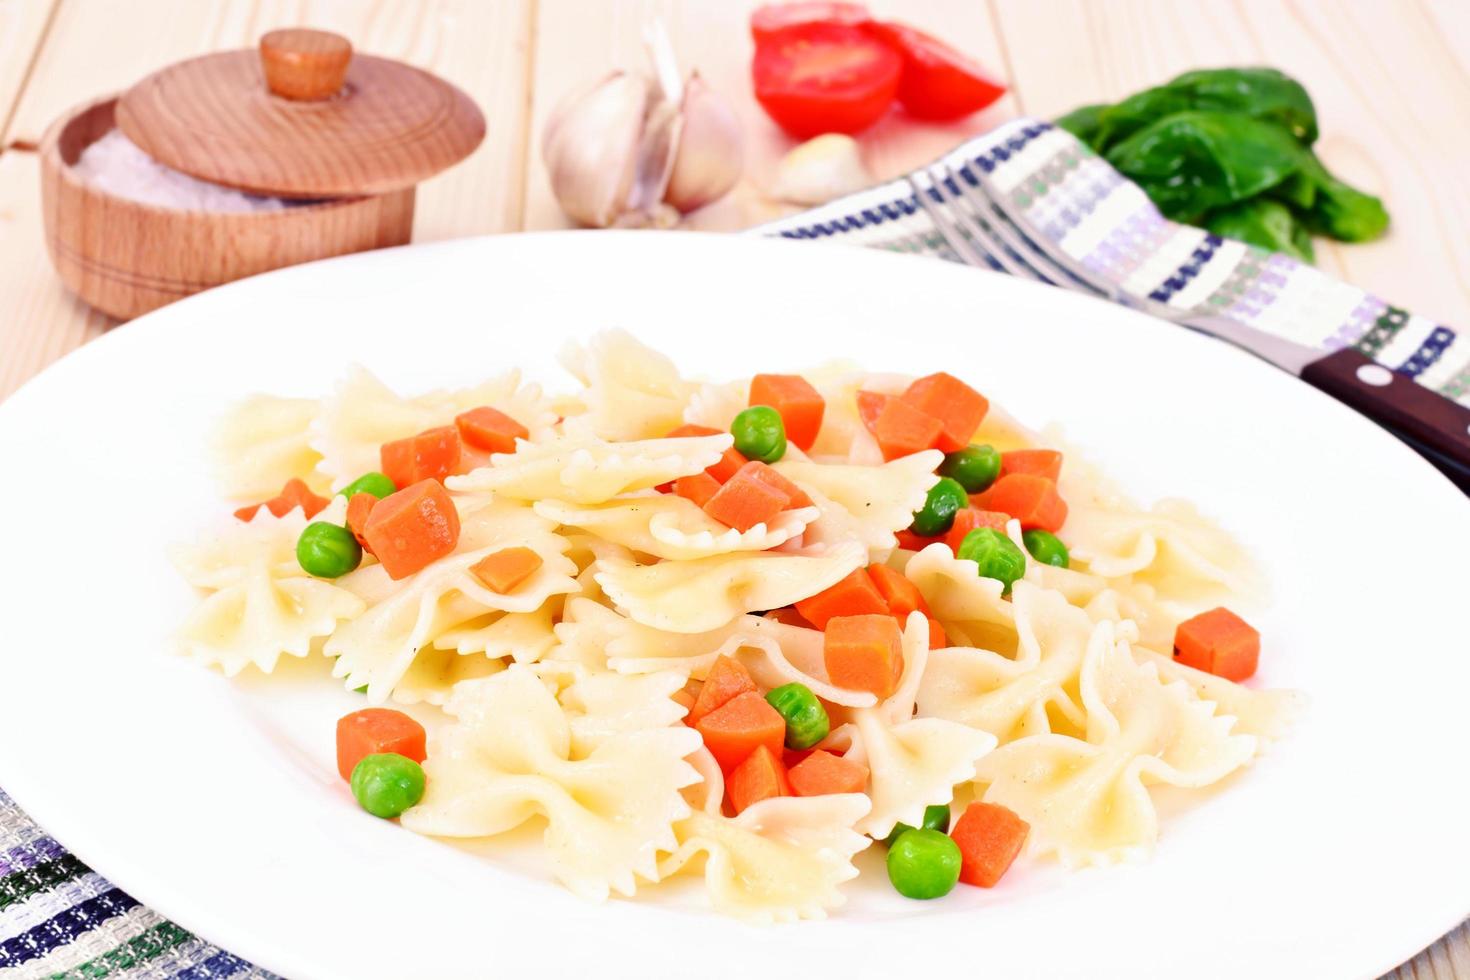 pastabåge med tärnade morötter, salami och gröna ärtor foto